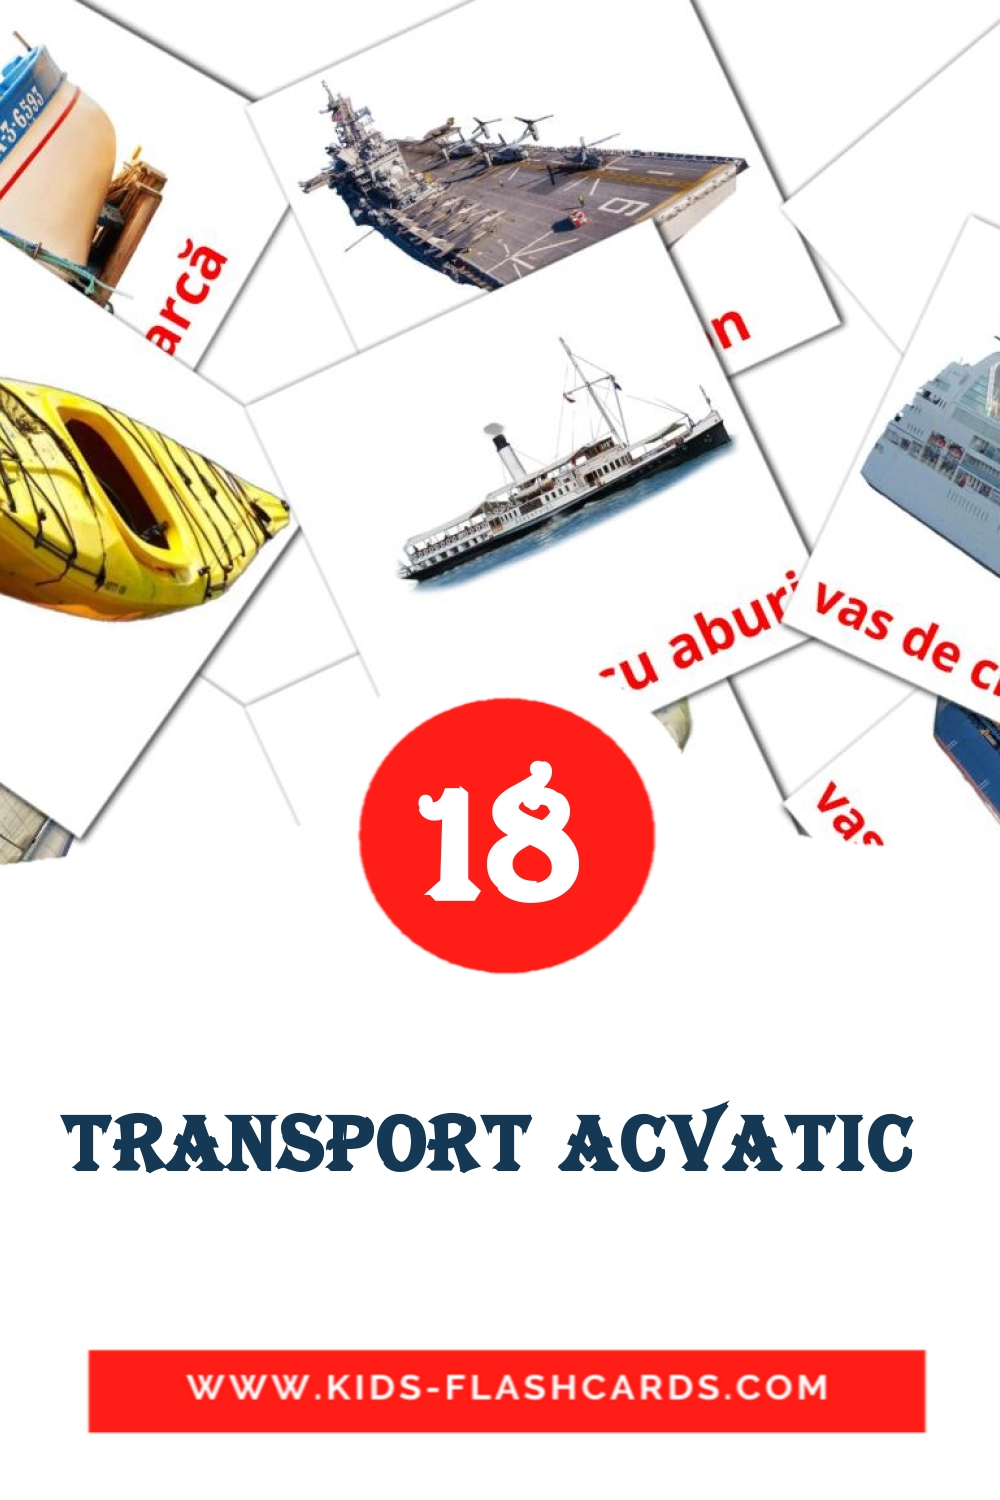 Transport acvatic  на румынском для Детского Сада (18 карточек)